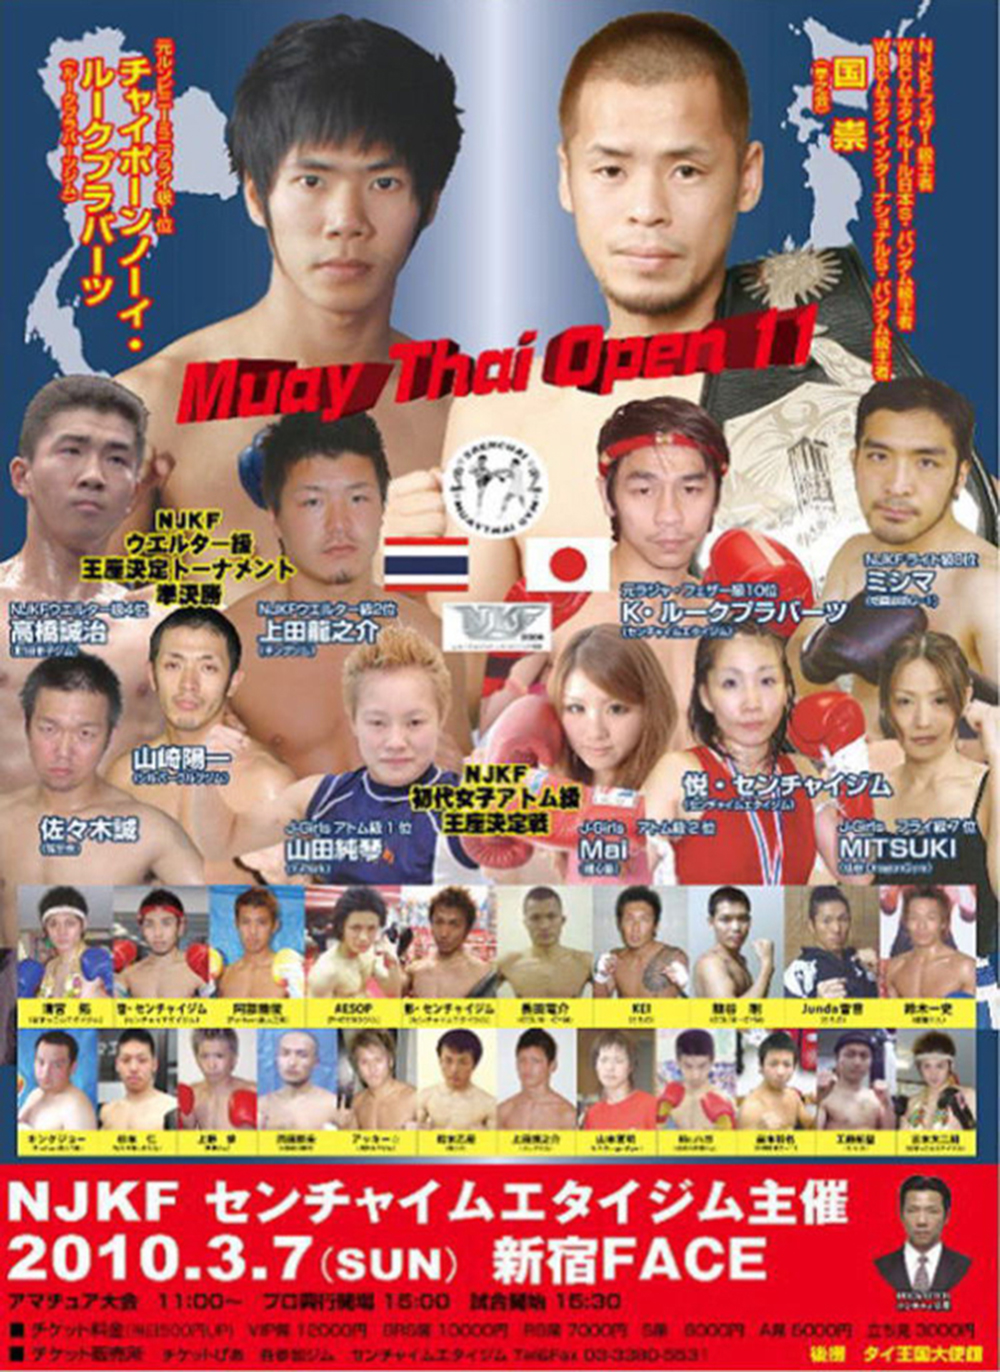 Muay Thai Open 11